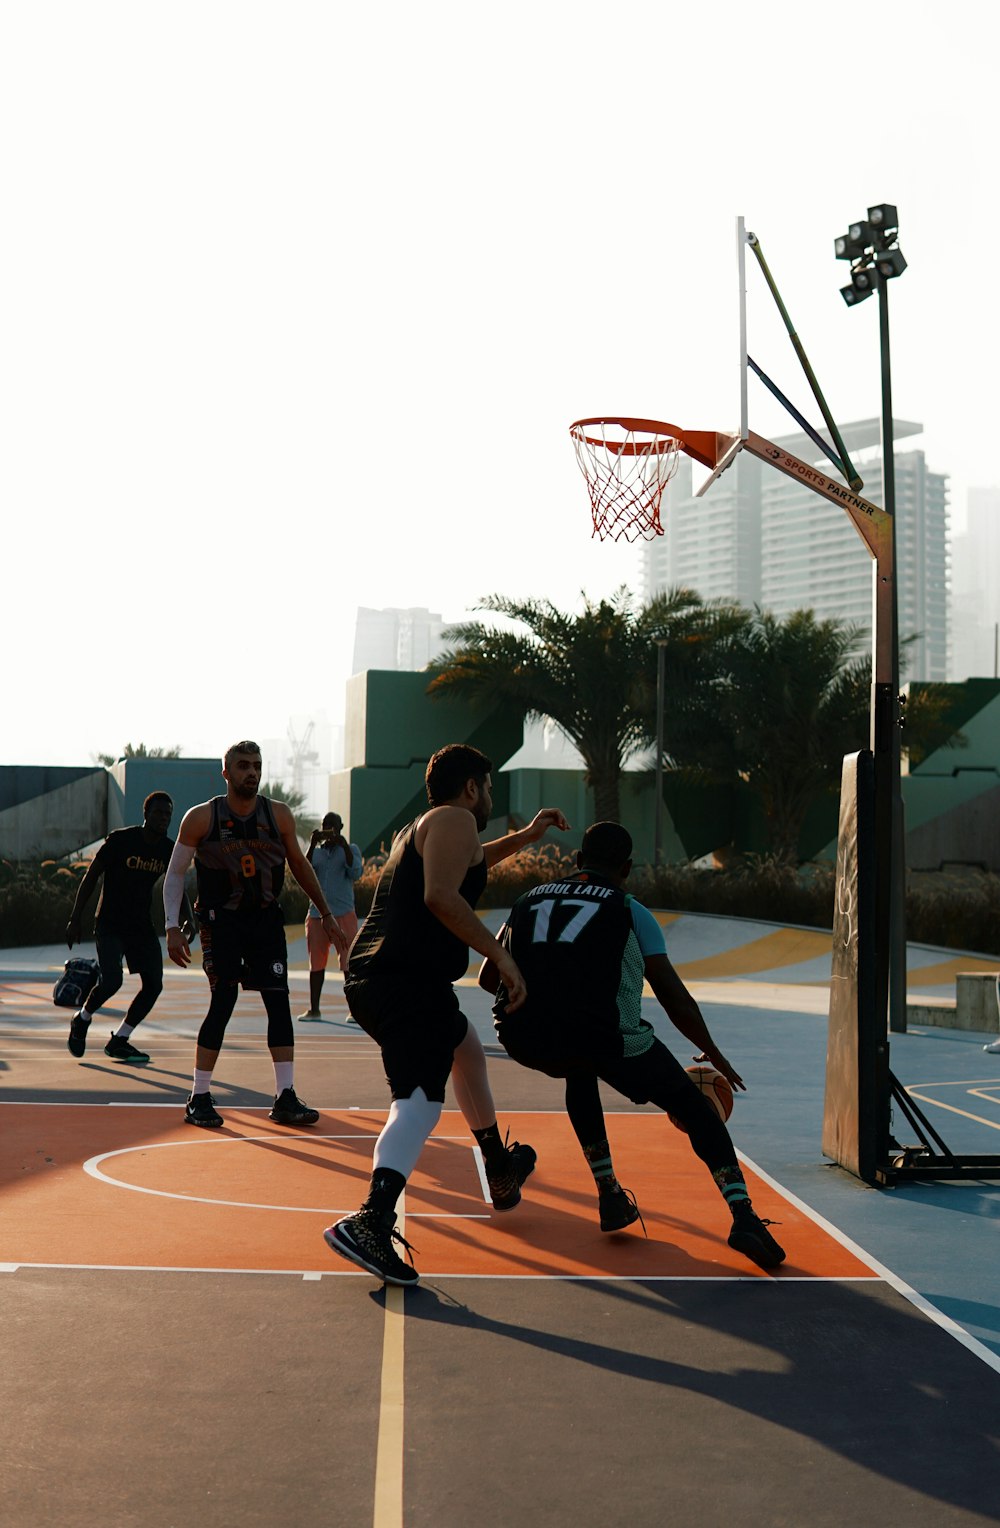 personnes jouant au basket-ball pendant la journée